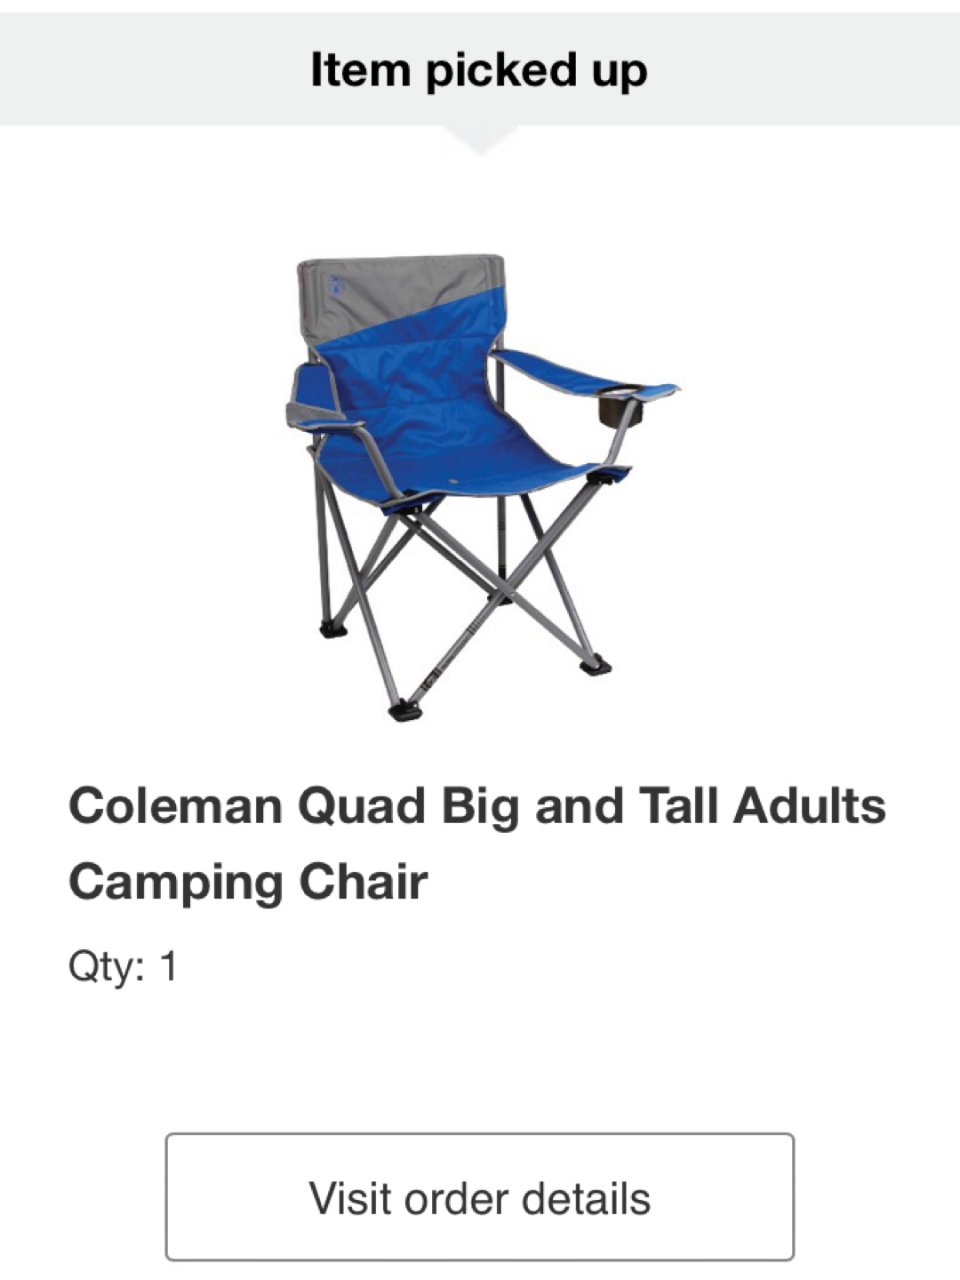 Camping Seat